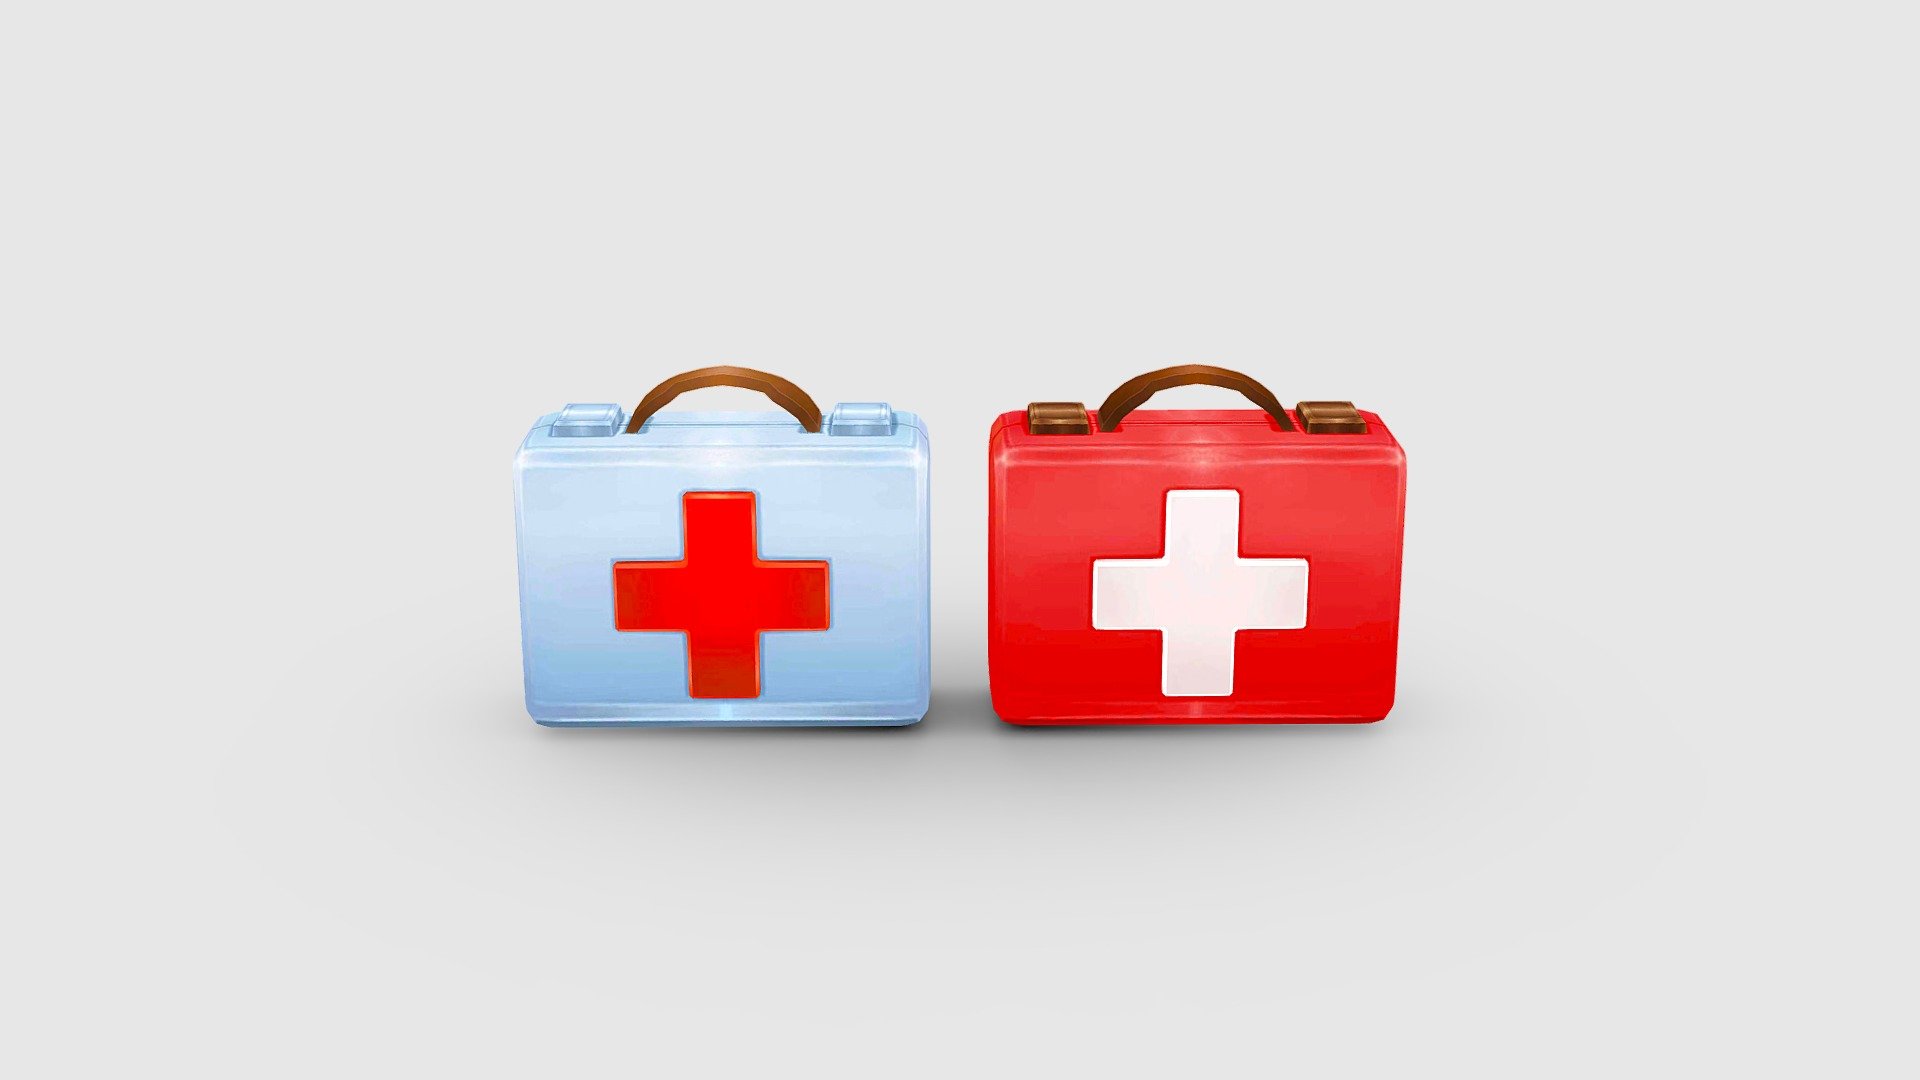 Cartoon medical kit - First aid kit Low-poly 3D model - Cartoon medical kit - First aid kit - 3D model by ler_cartoon (@lerrrrr) 3d model